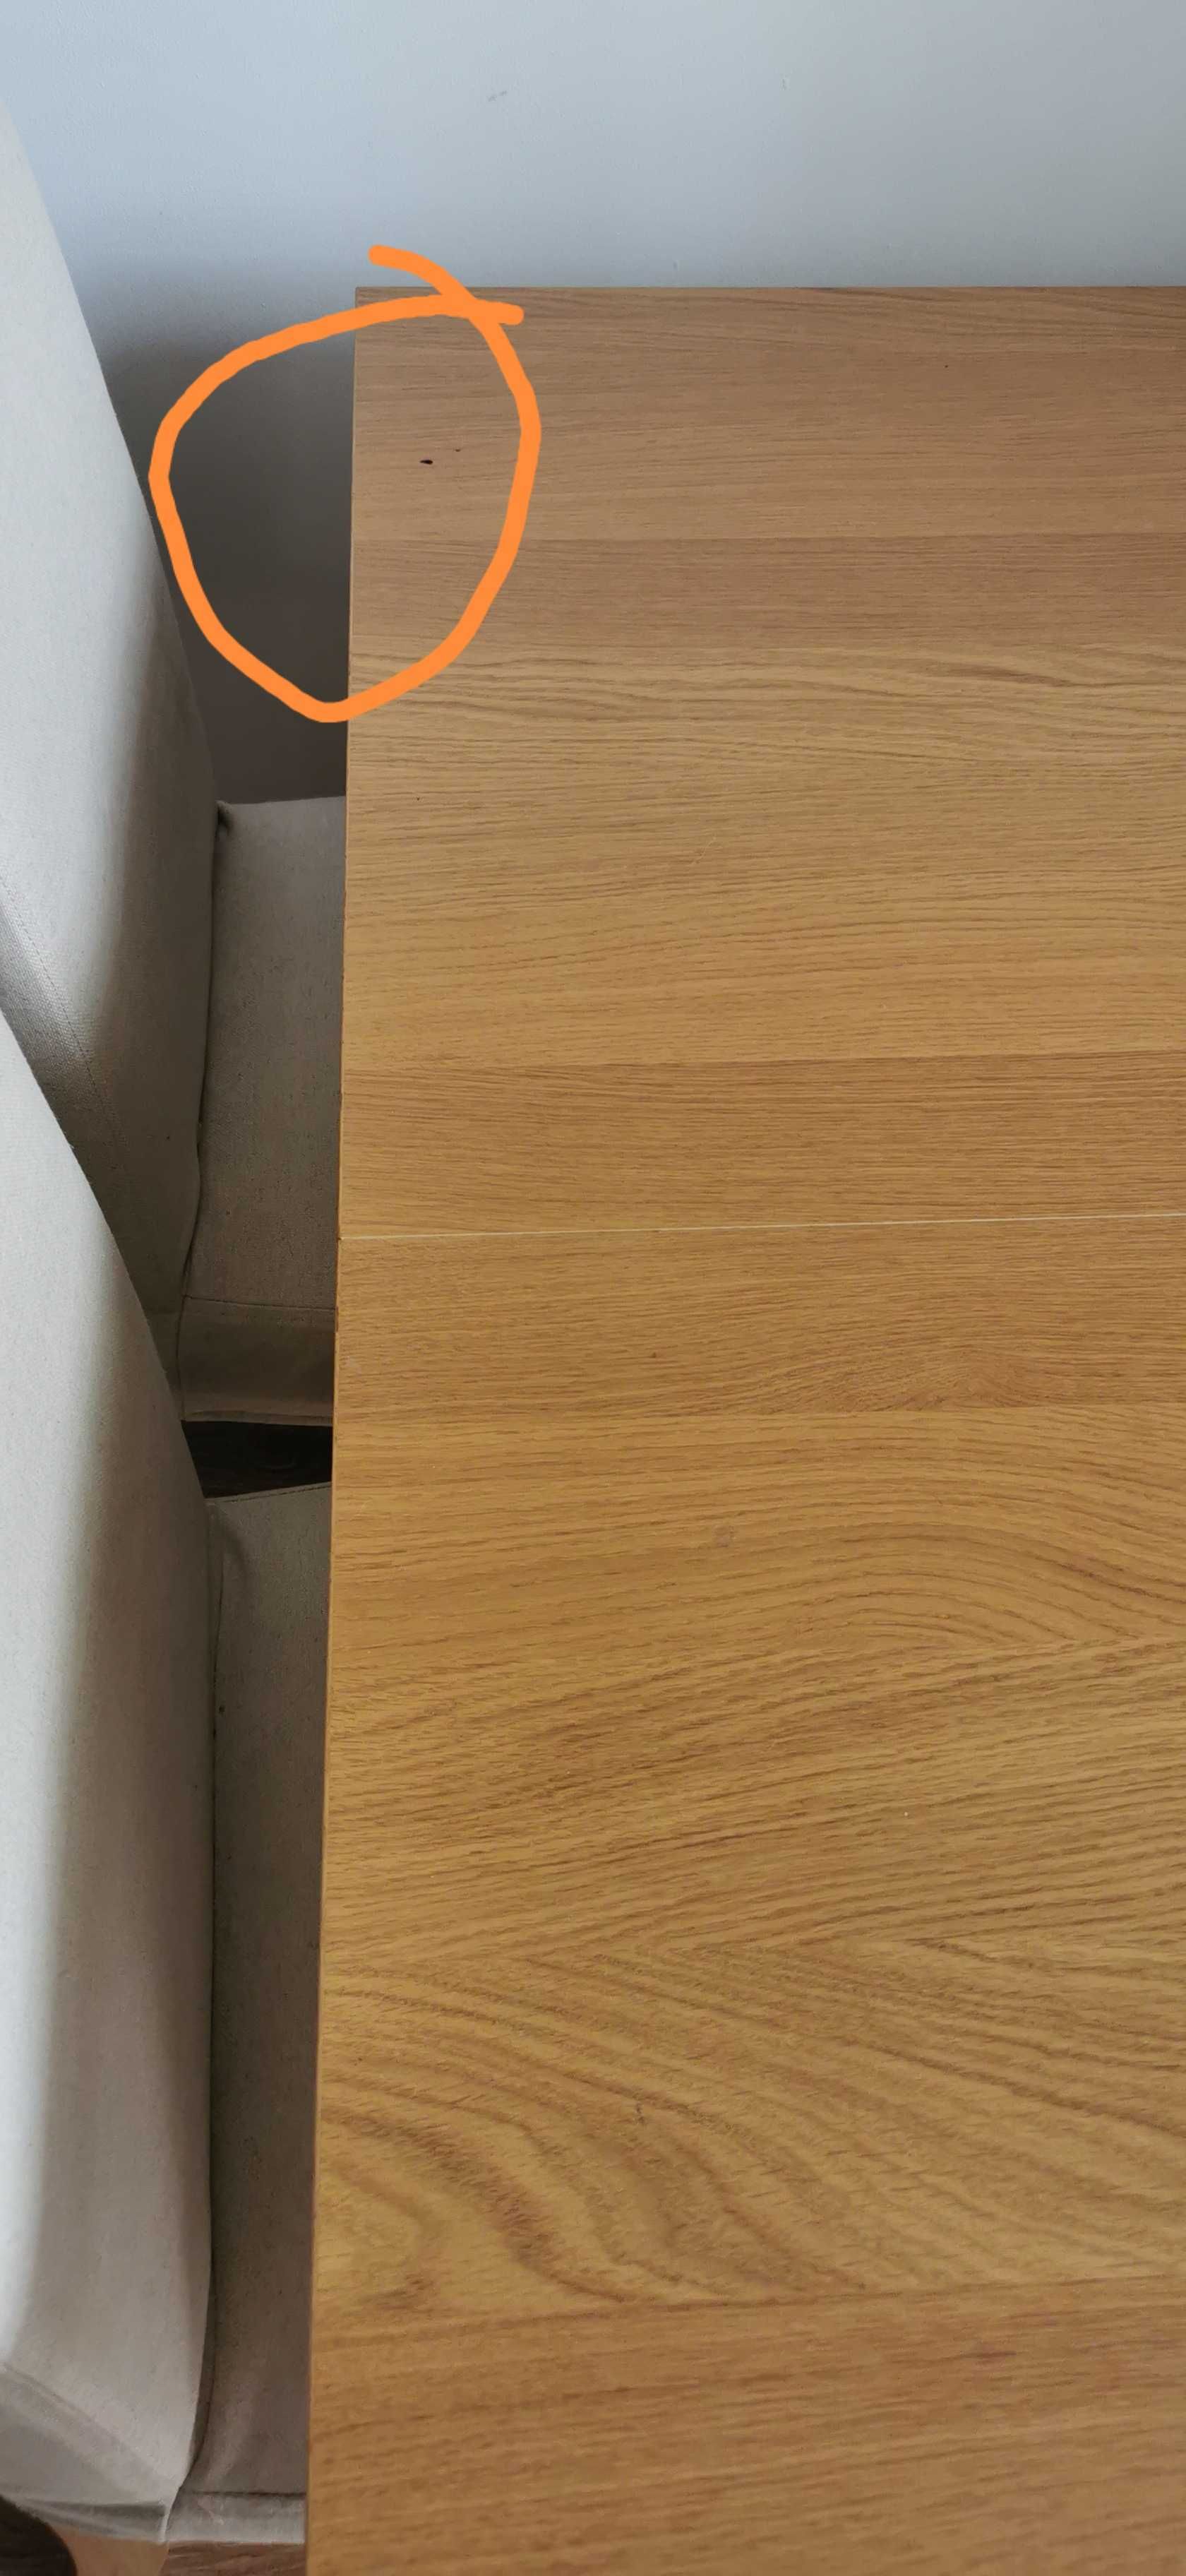 Stół rozkładany Ikea